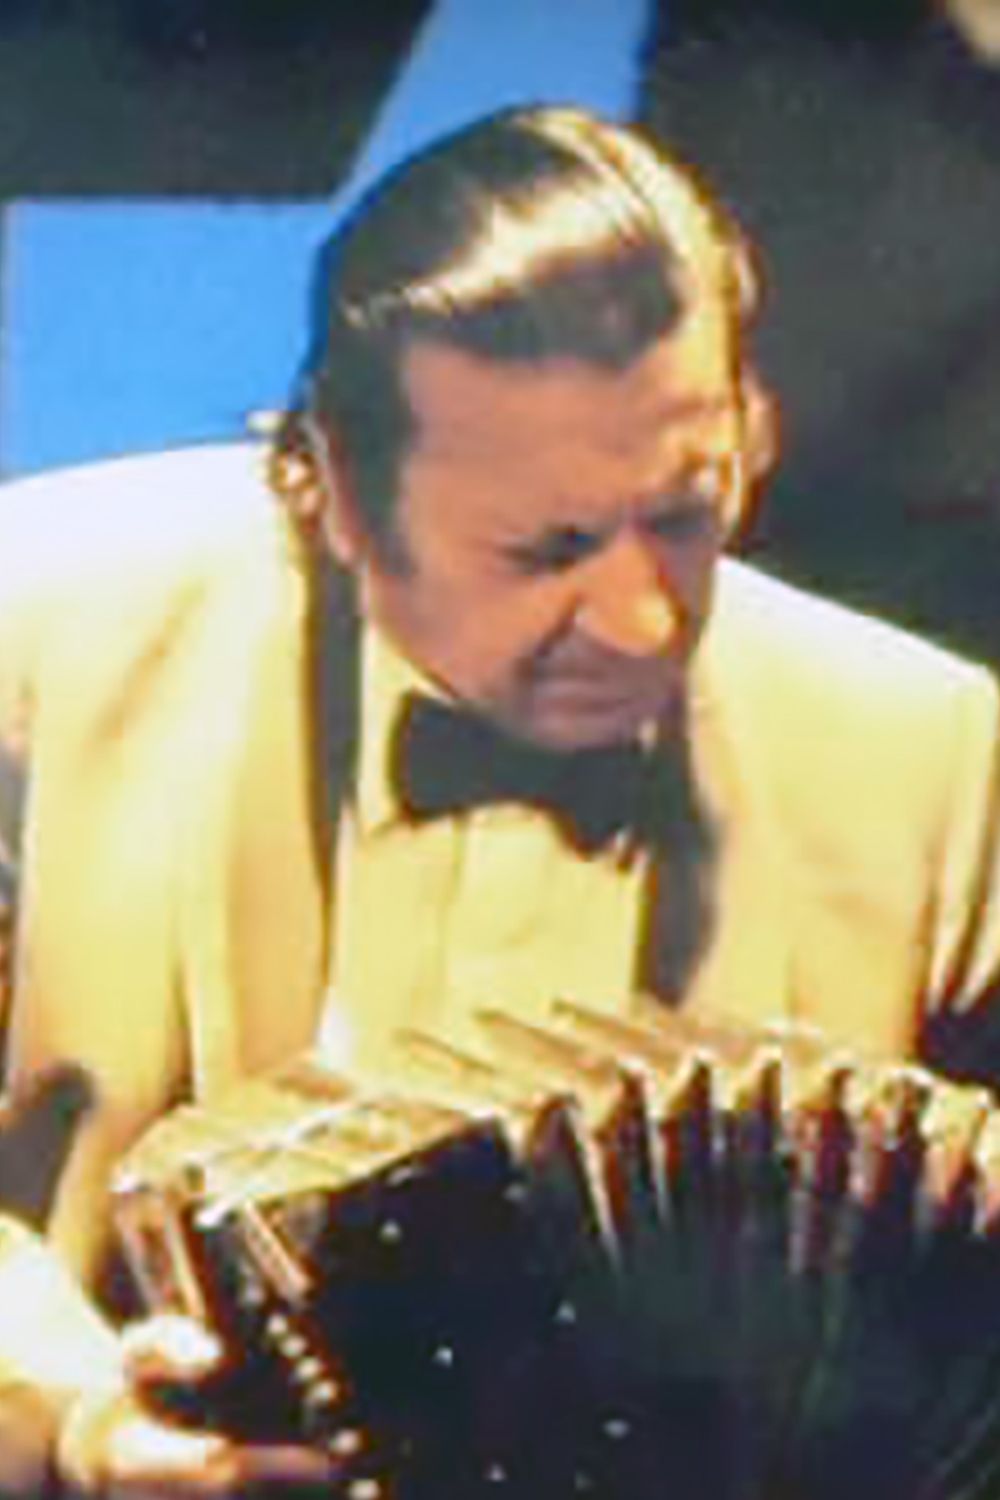 Carlos Lazzari, Argentine Tango musician and composer.